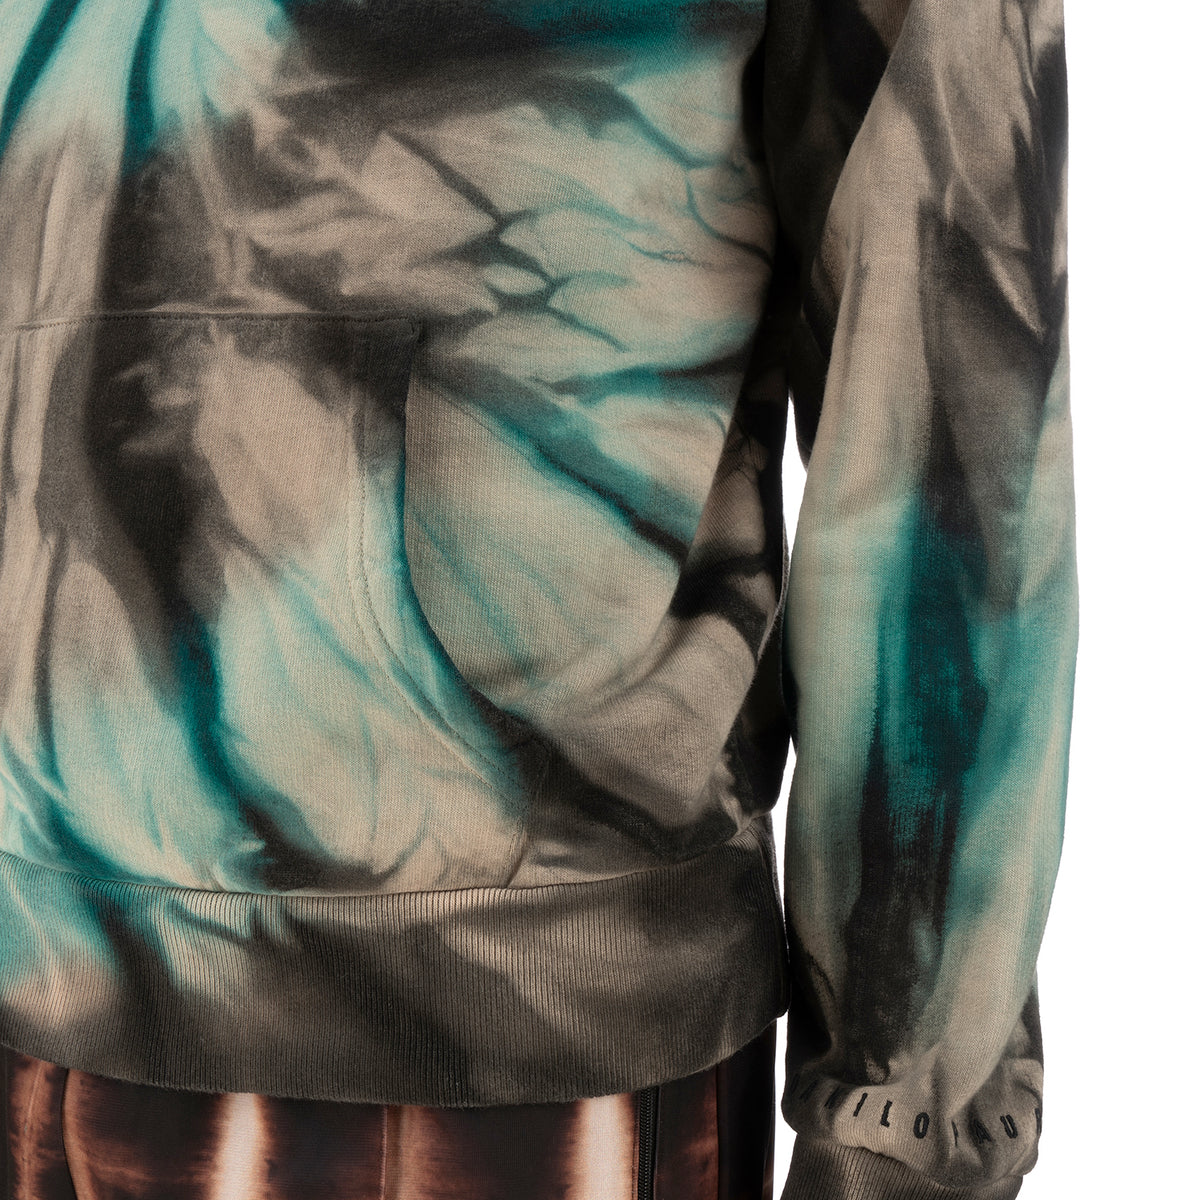 Danilo Paura | 'Akim' Embroidery Hoody Sweatshirt Turquoise - Concrete